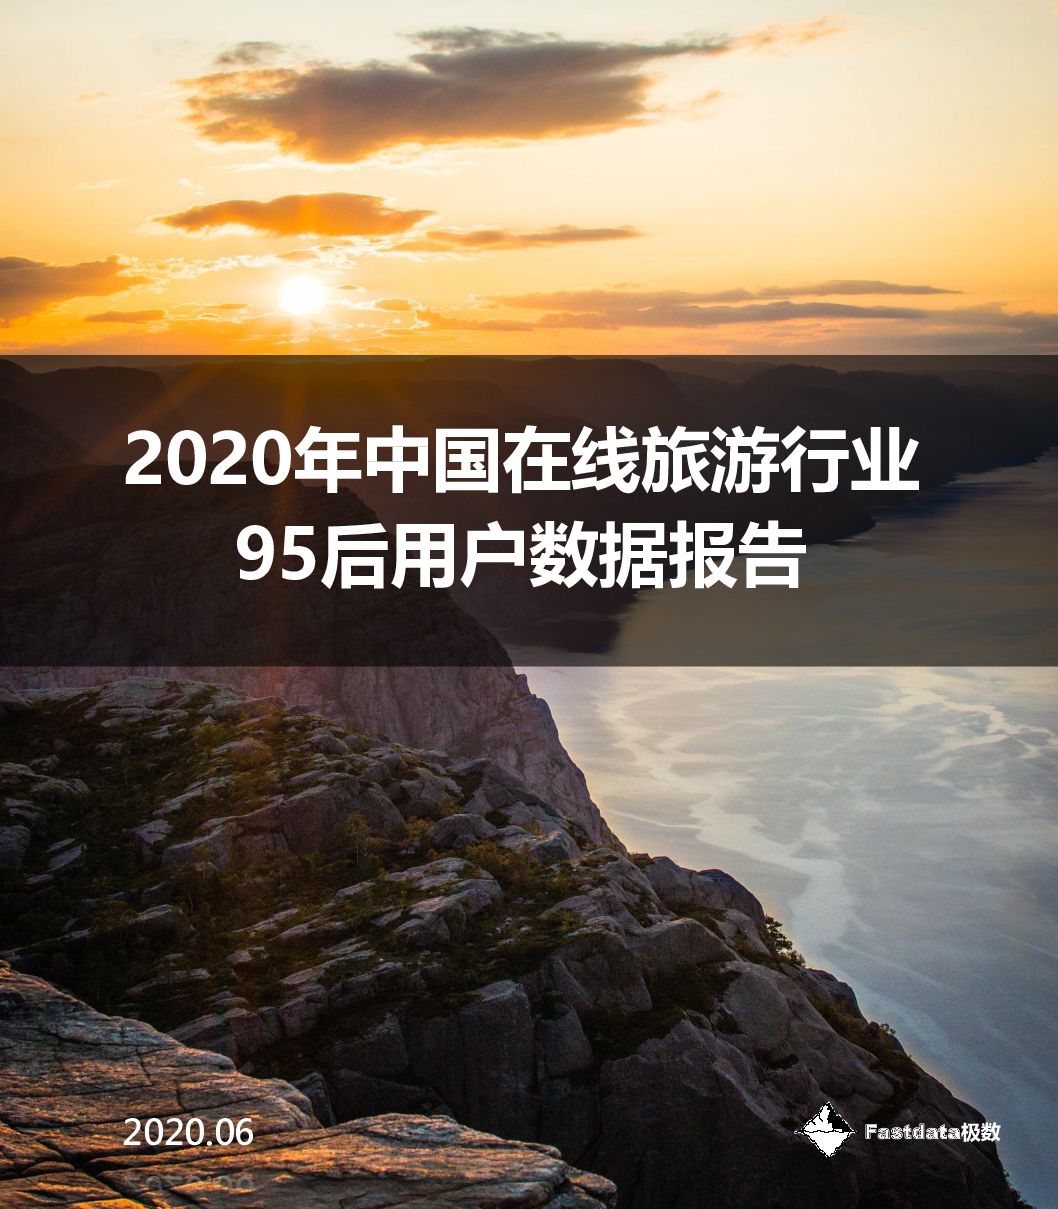 【毕友福利】2020年中国在线旅游行业95后用户数据报告-Fastdata极数.pdf